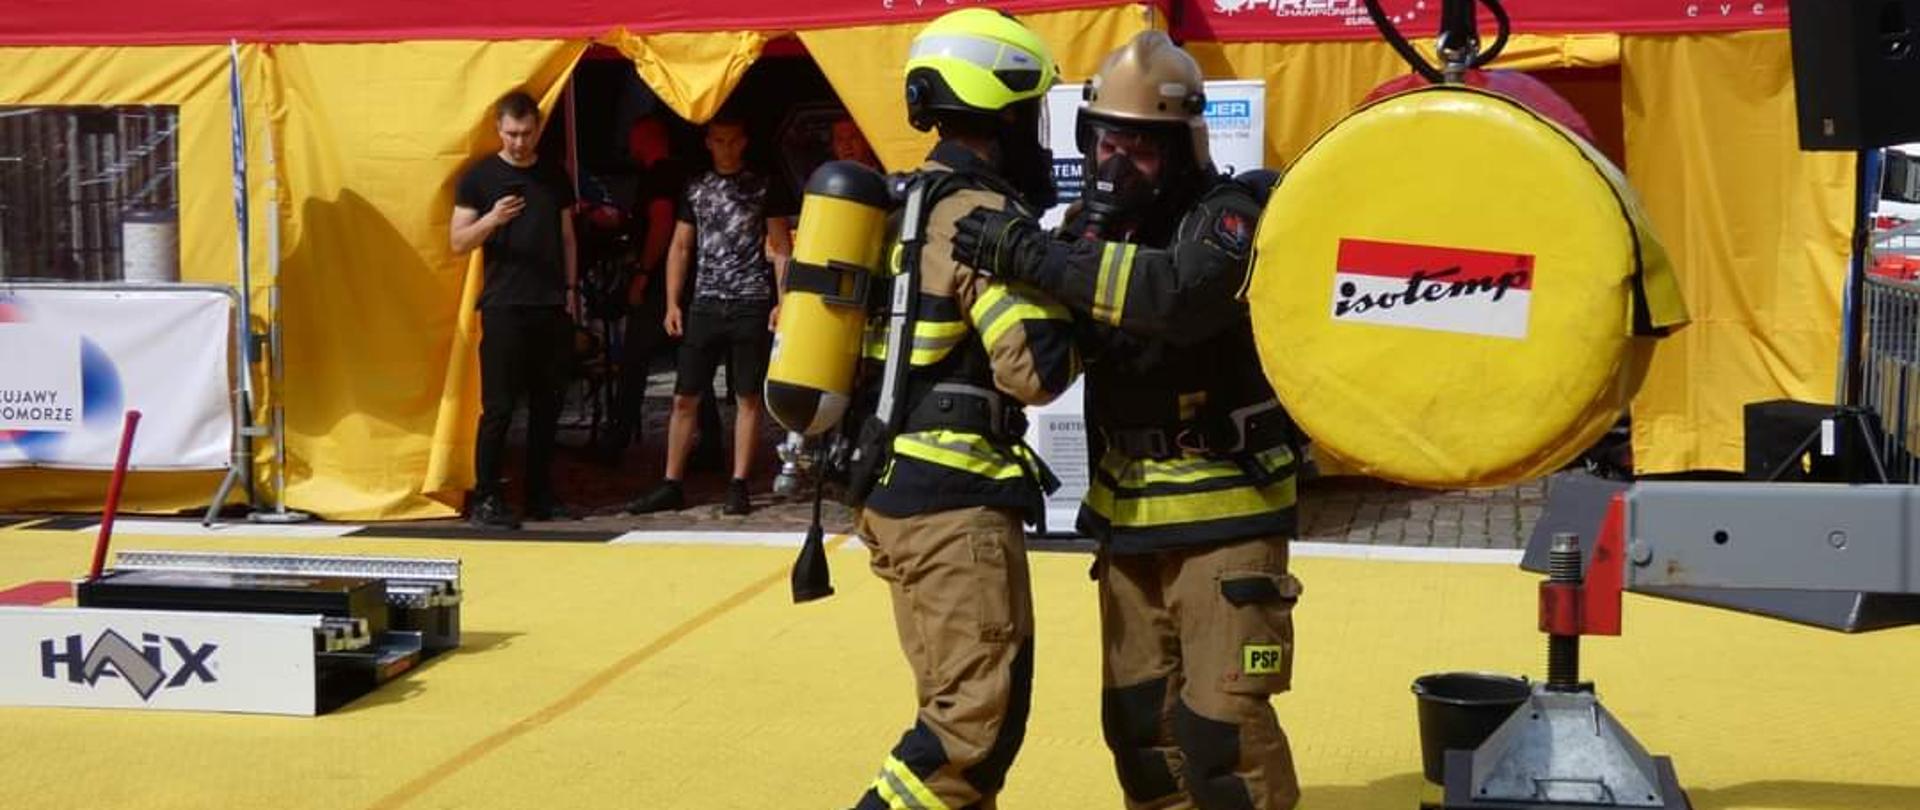 Na zdjęciu widać dwóch strażaków w umundurowaniu bojowym z butlami powietrznymi na plecach. Strażacy znajdują się na placu gdzie odbywają się zawody. W tle widać namioty. Strażacy stoją na żółtej macie. 